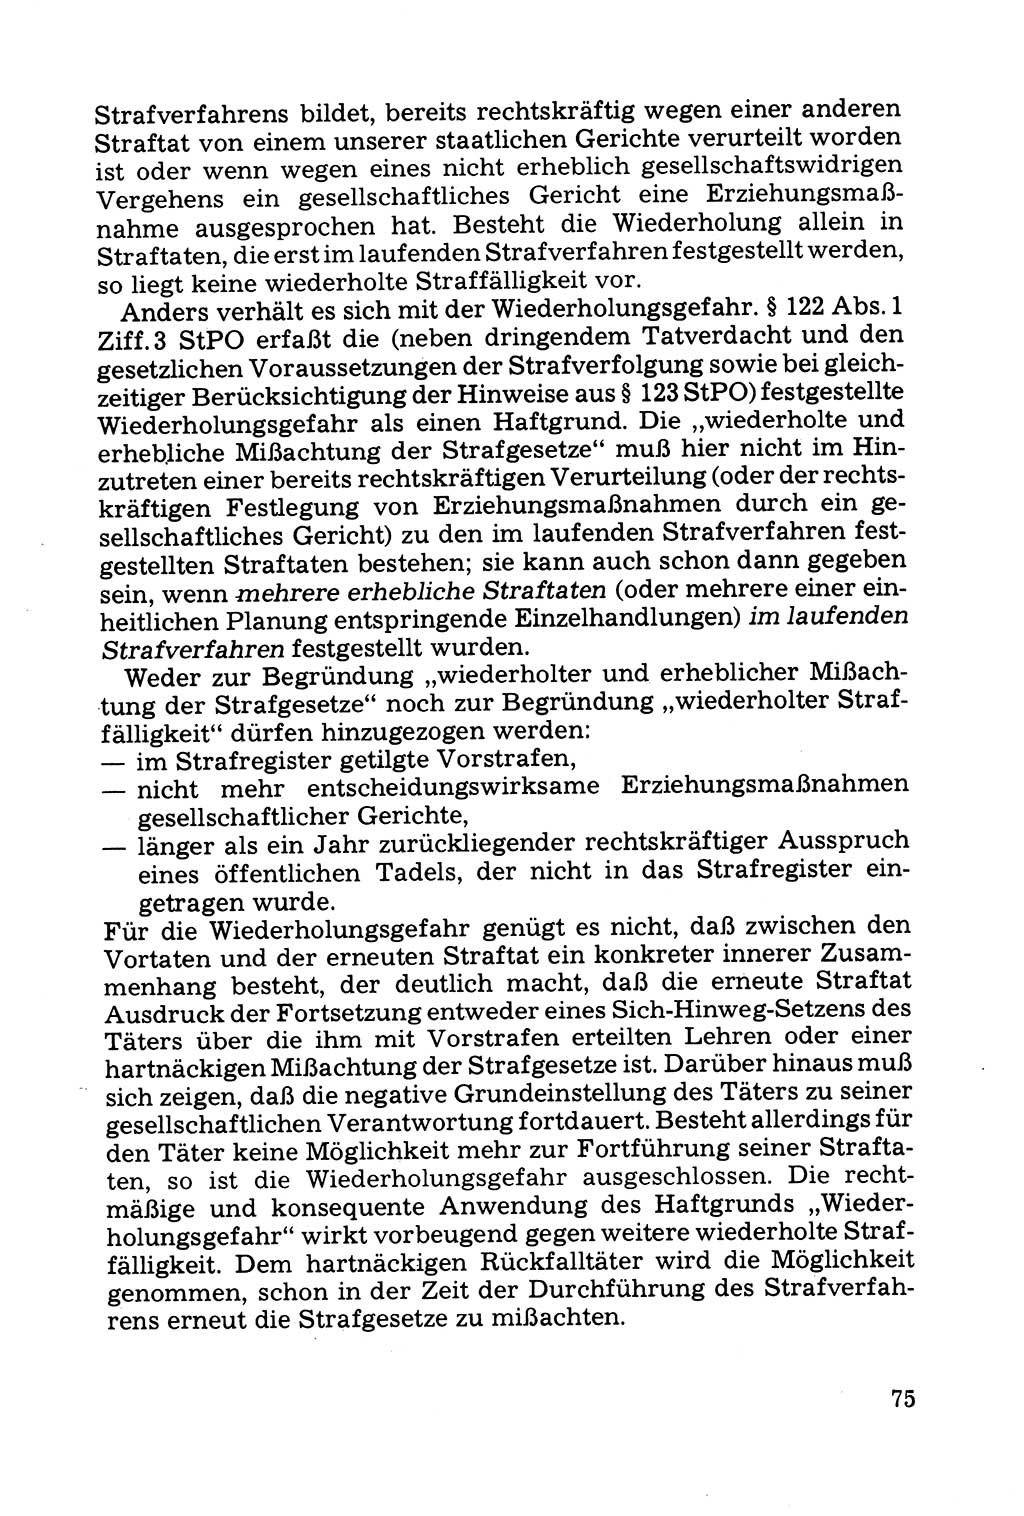 Grundfragen der Beweisführung im Ermittlungsverfahren [Deutsche Demokratische Republik (DDR)] 1980, Seite 75 (Bws.-Fhrg. EV DDR 1980, S. 75)